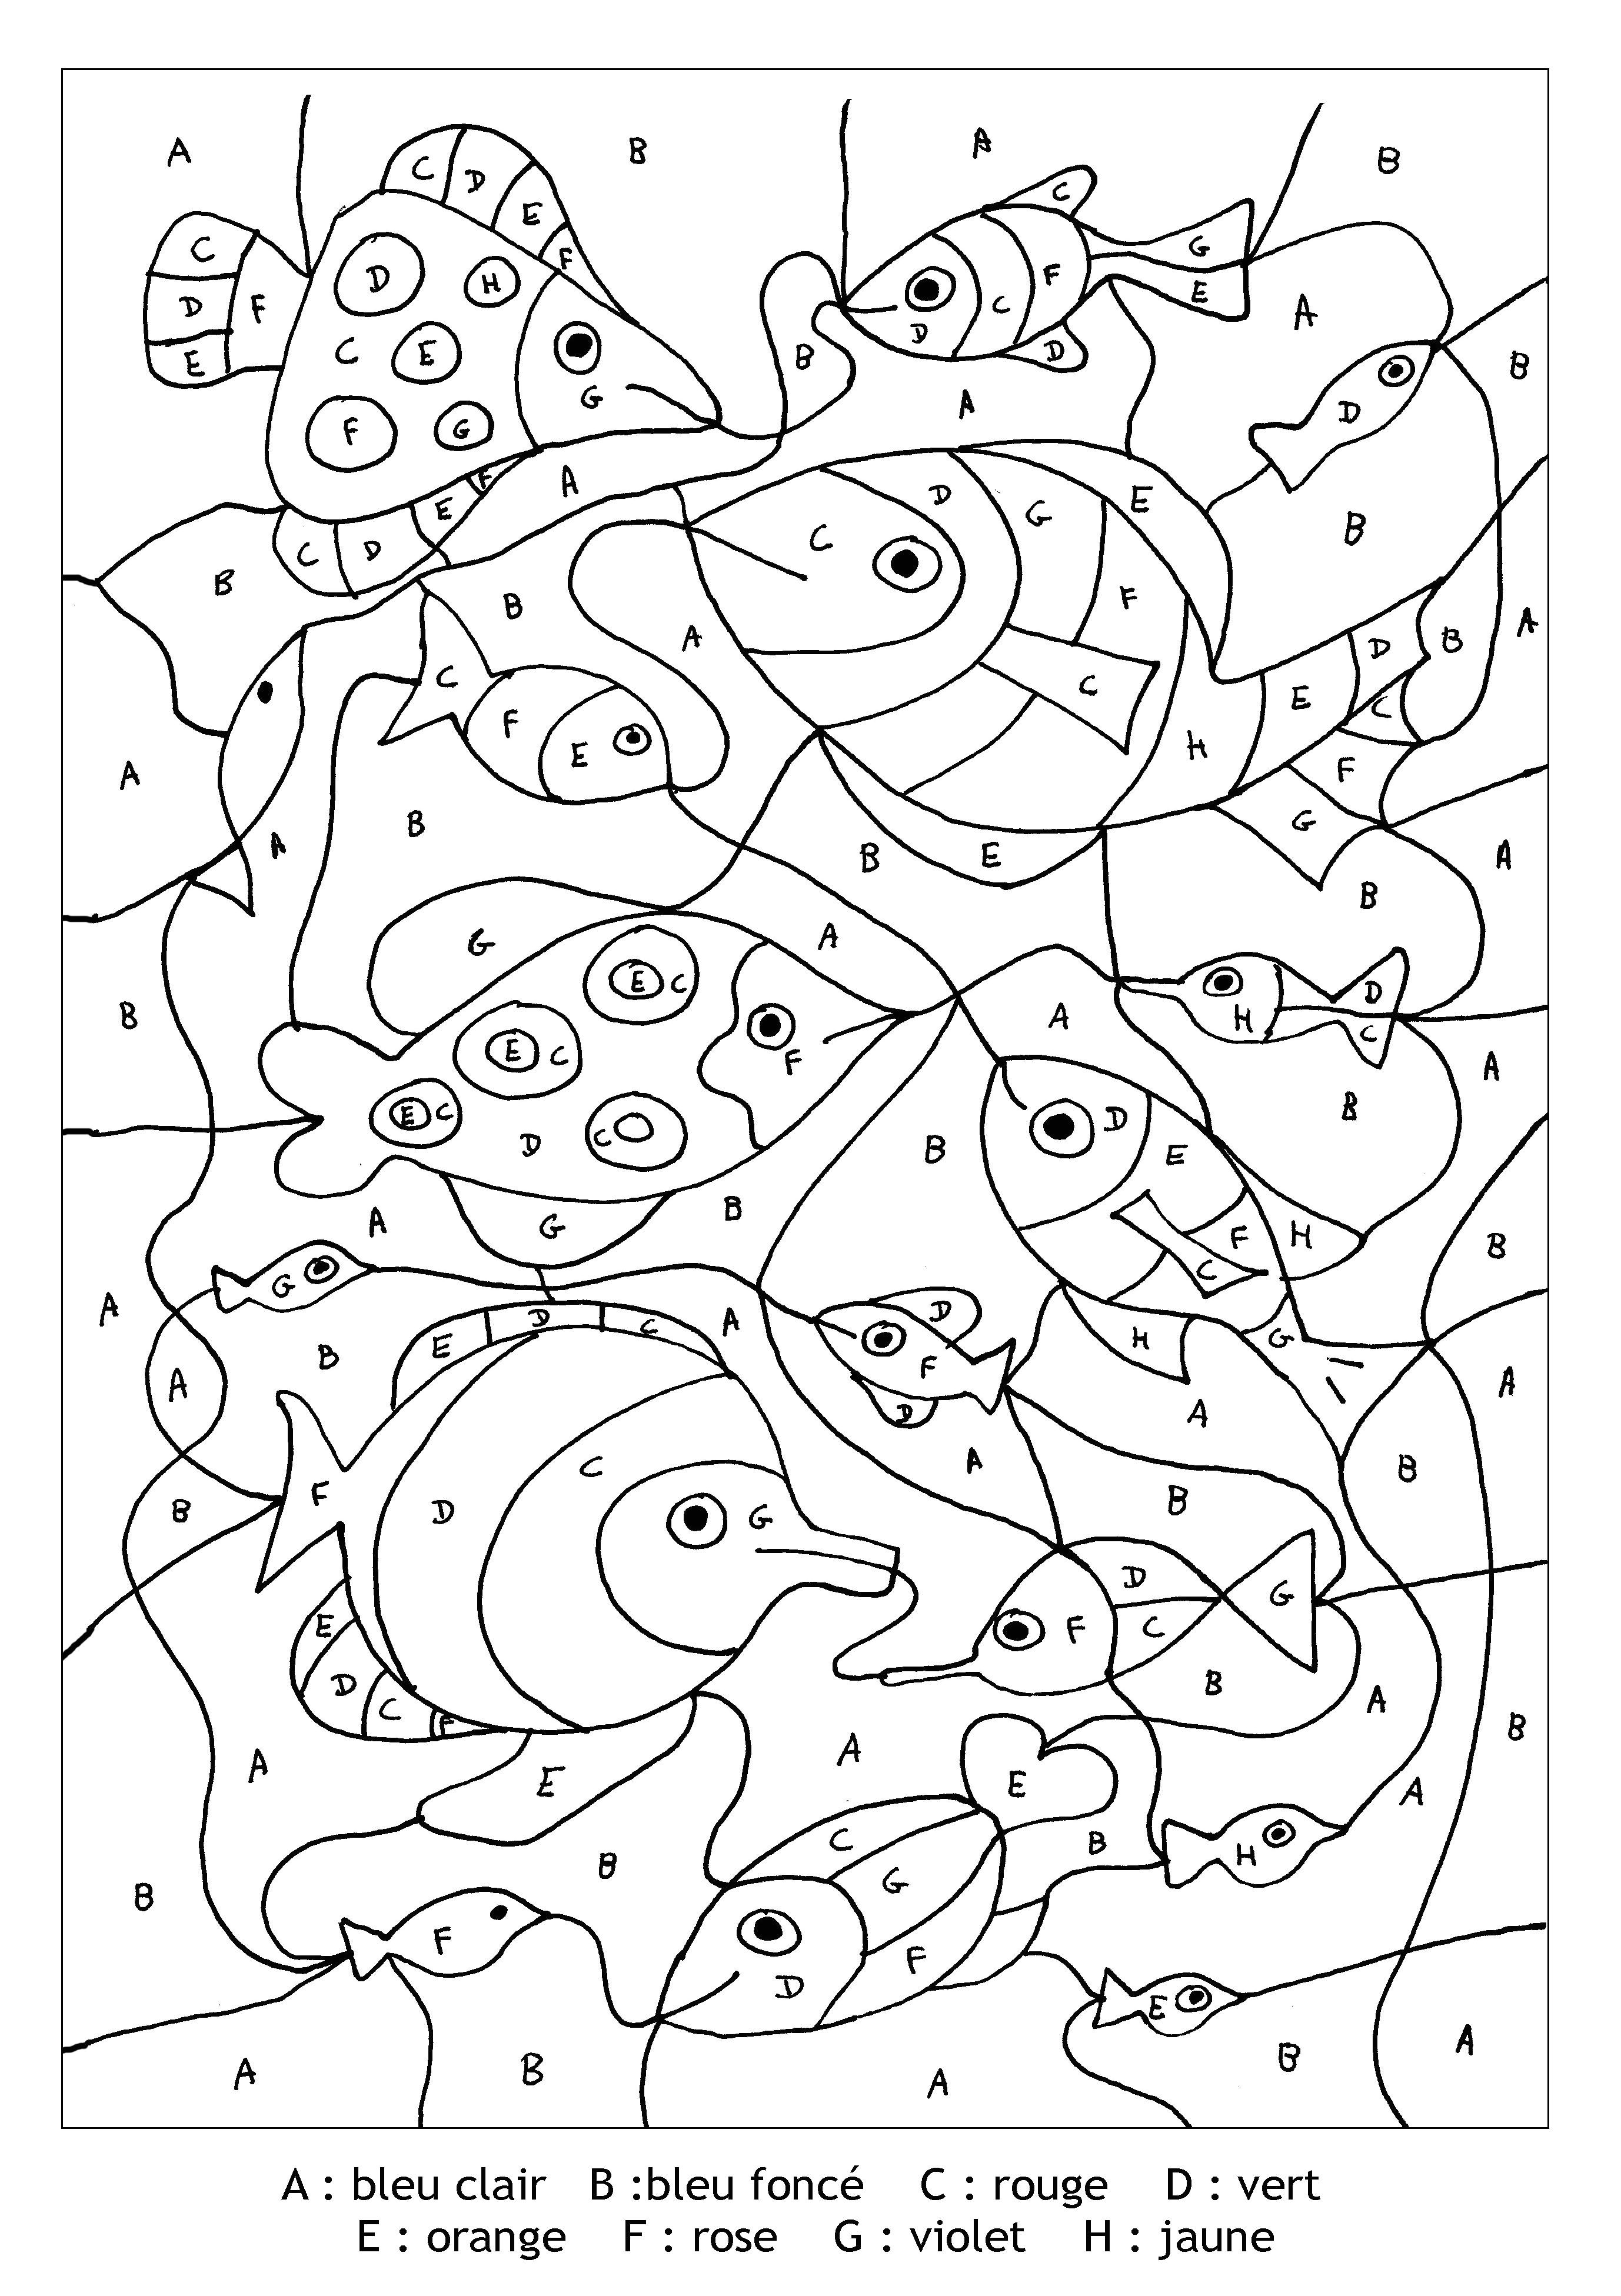 Pour imprimer ce coloriage gratuit coloriage magique lettres poissons cliquez